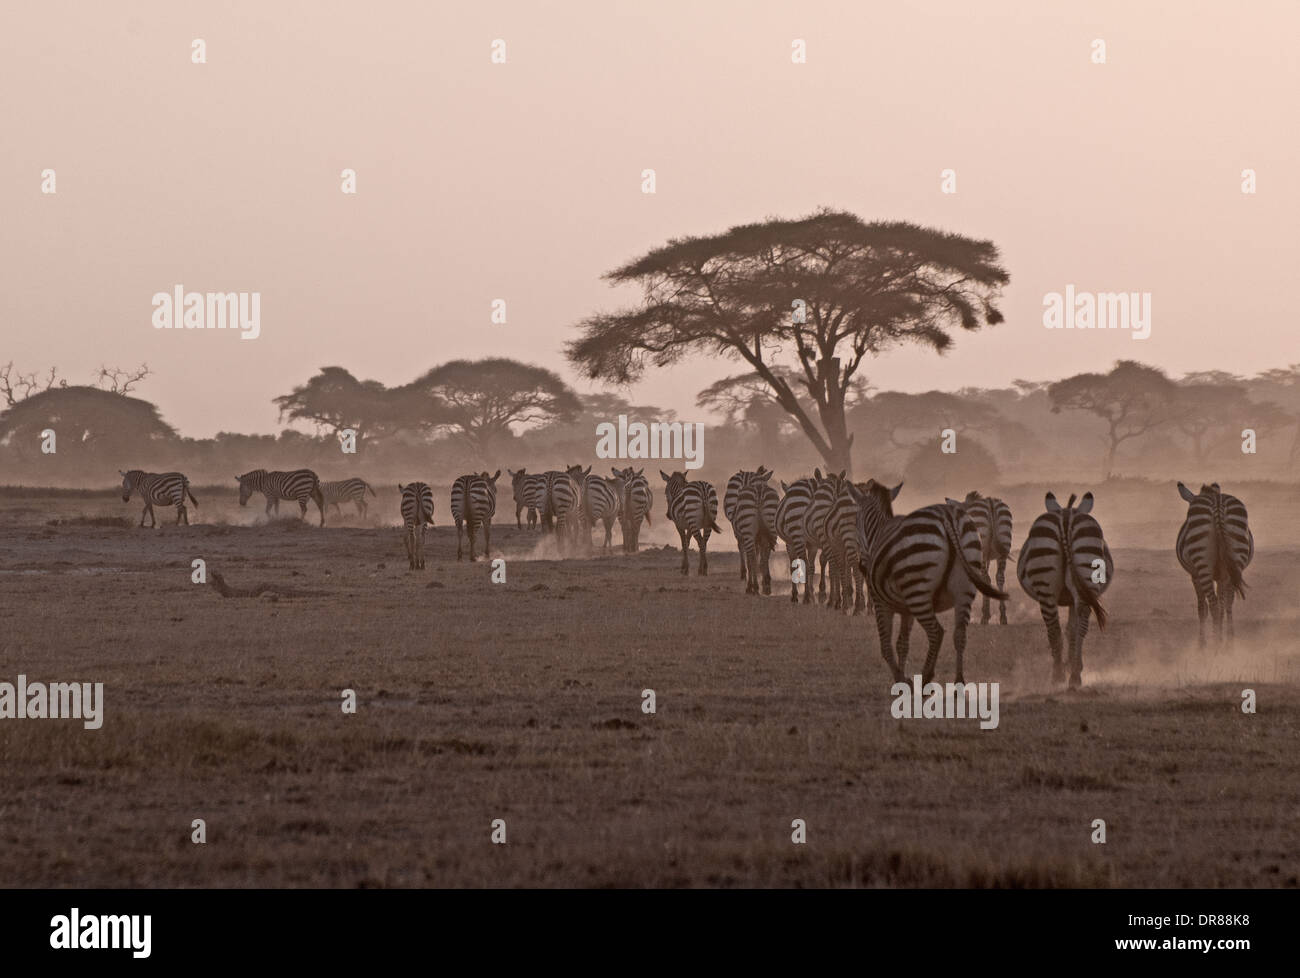 Troupeau de zèbres commun passé trek acacia arbres soulevant la poussière au crépuscule dans le Parc national Amboseli Kenya Afrique de l'Est Banque D'Images